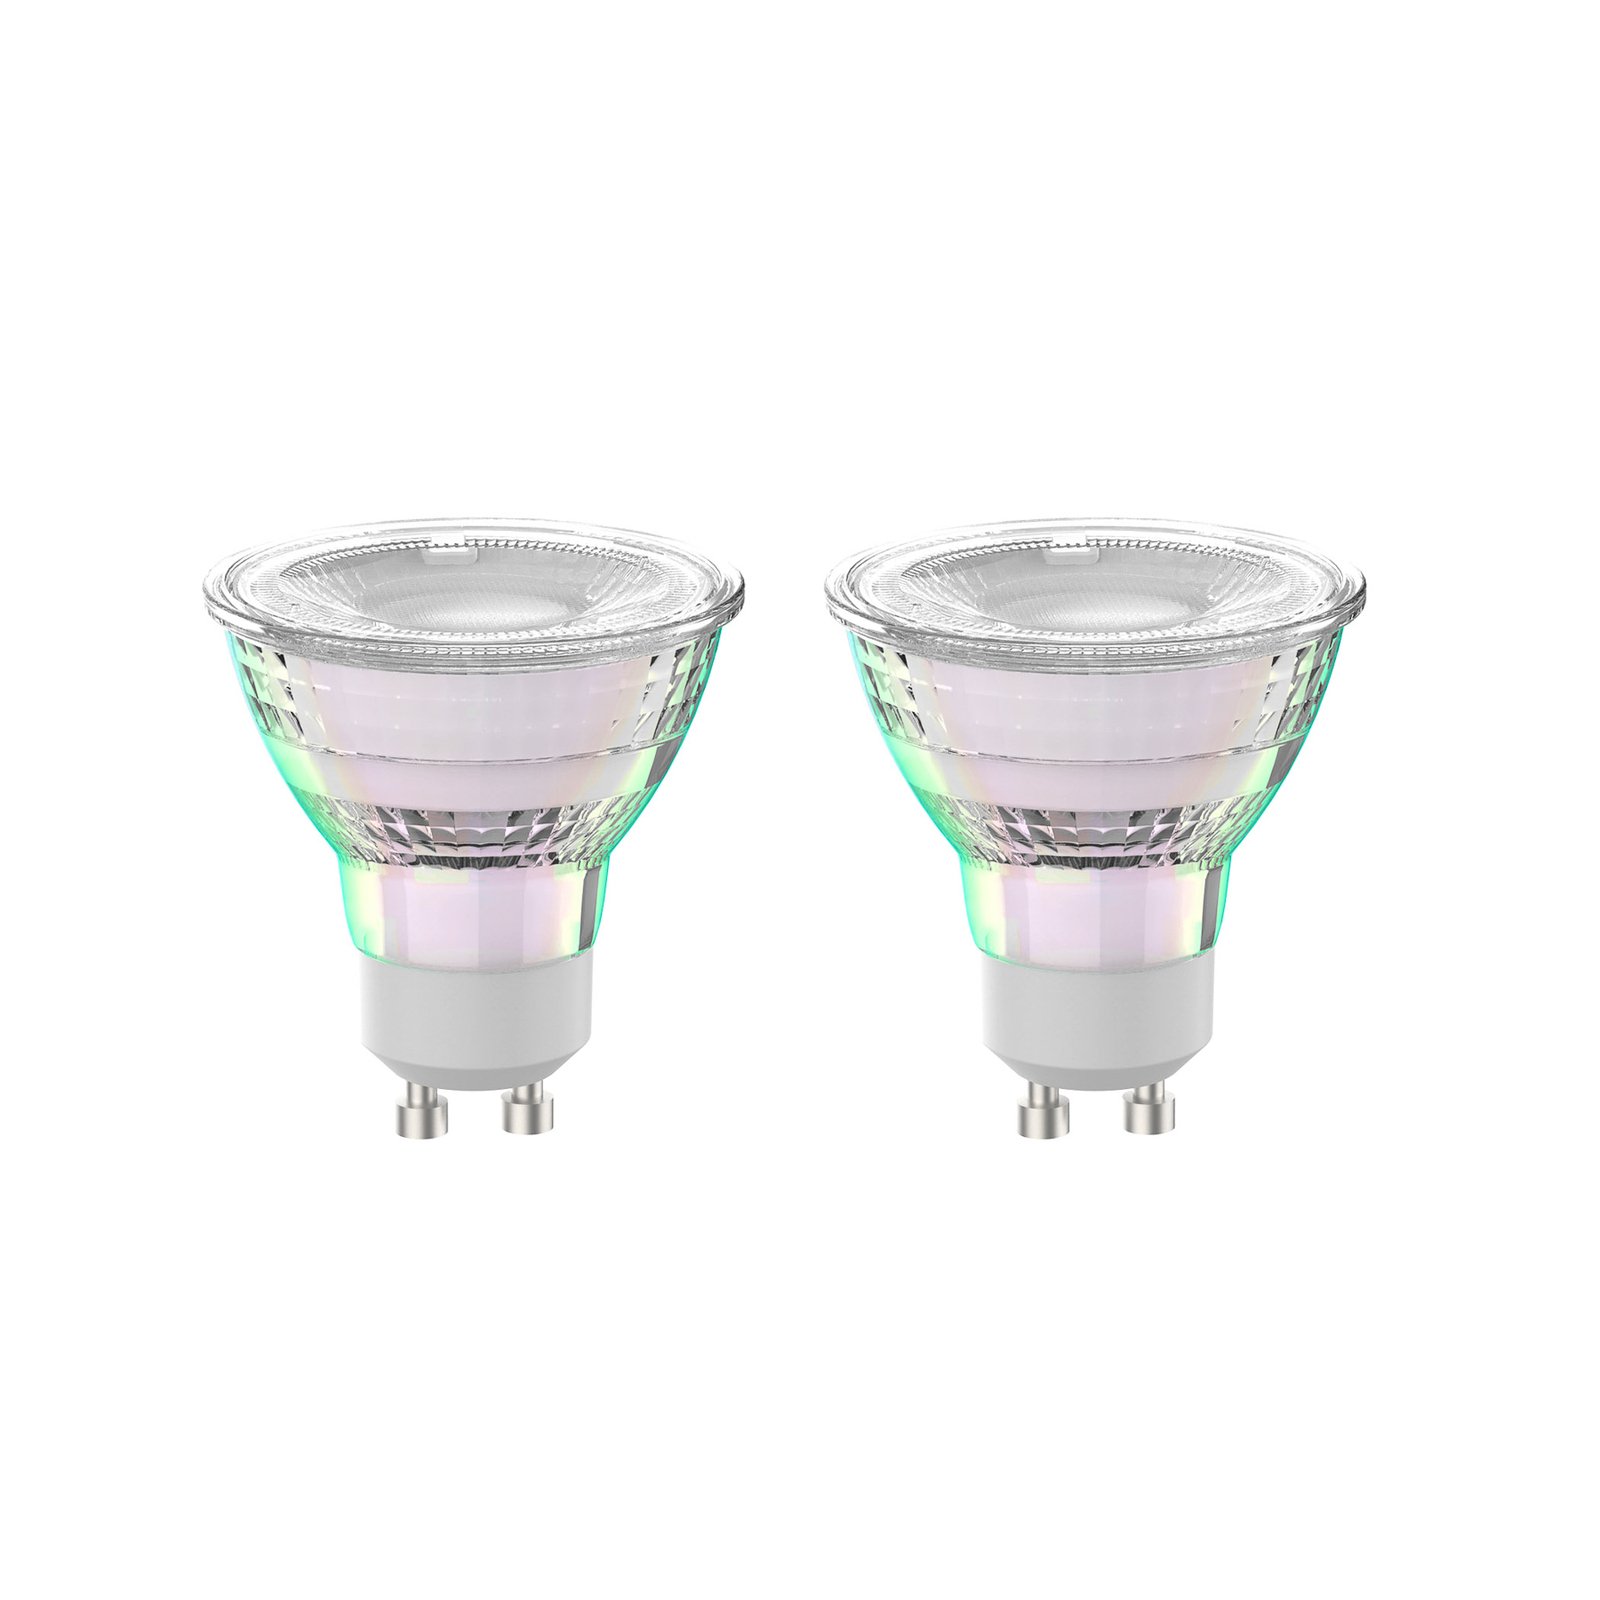 Arcchio LED lamp GU10 2.5W 4000K 450lm glas set van 2